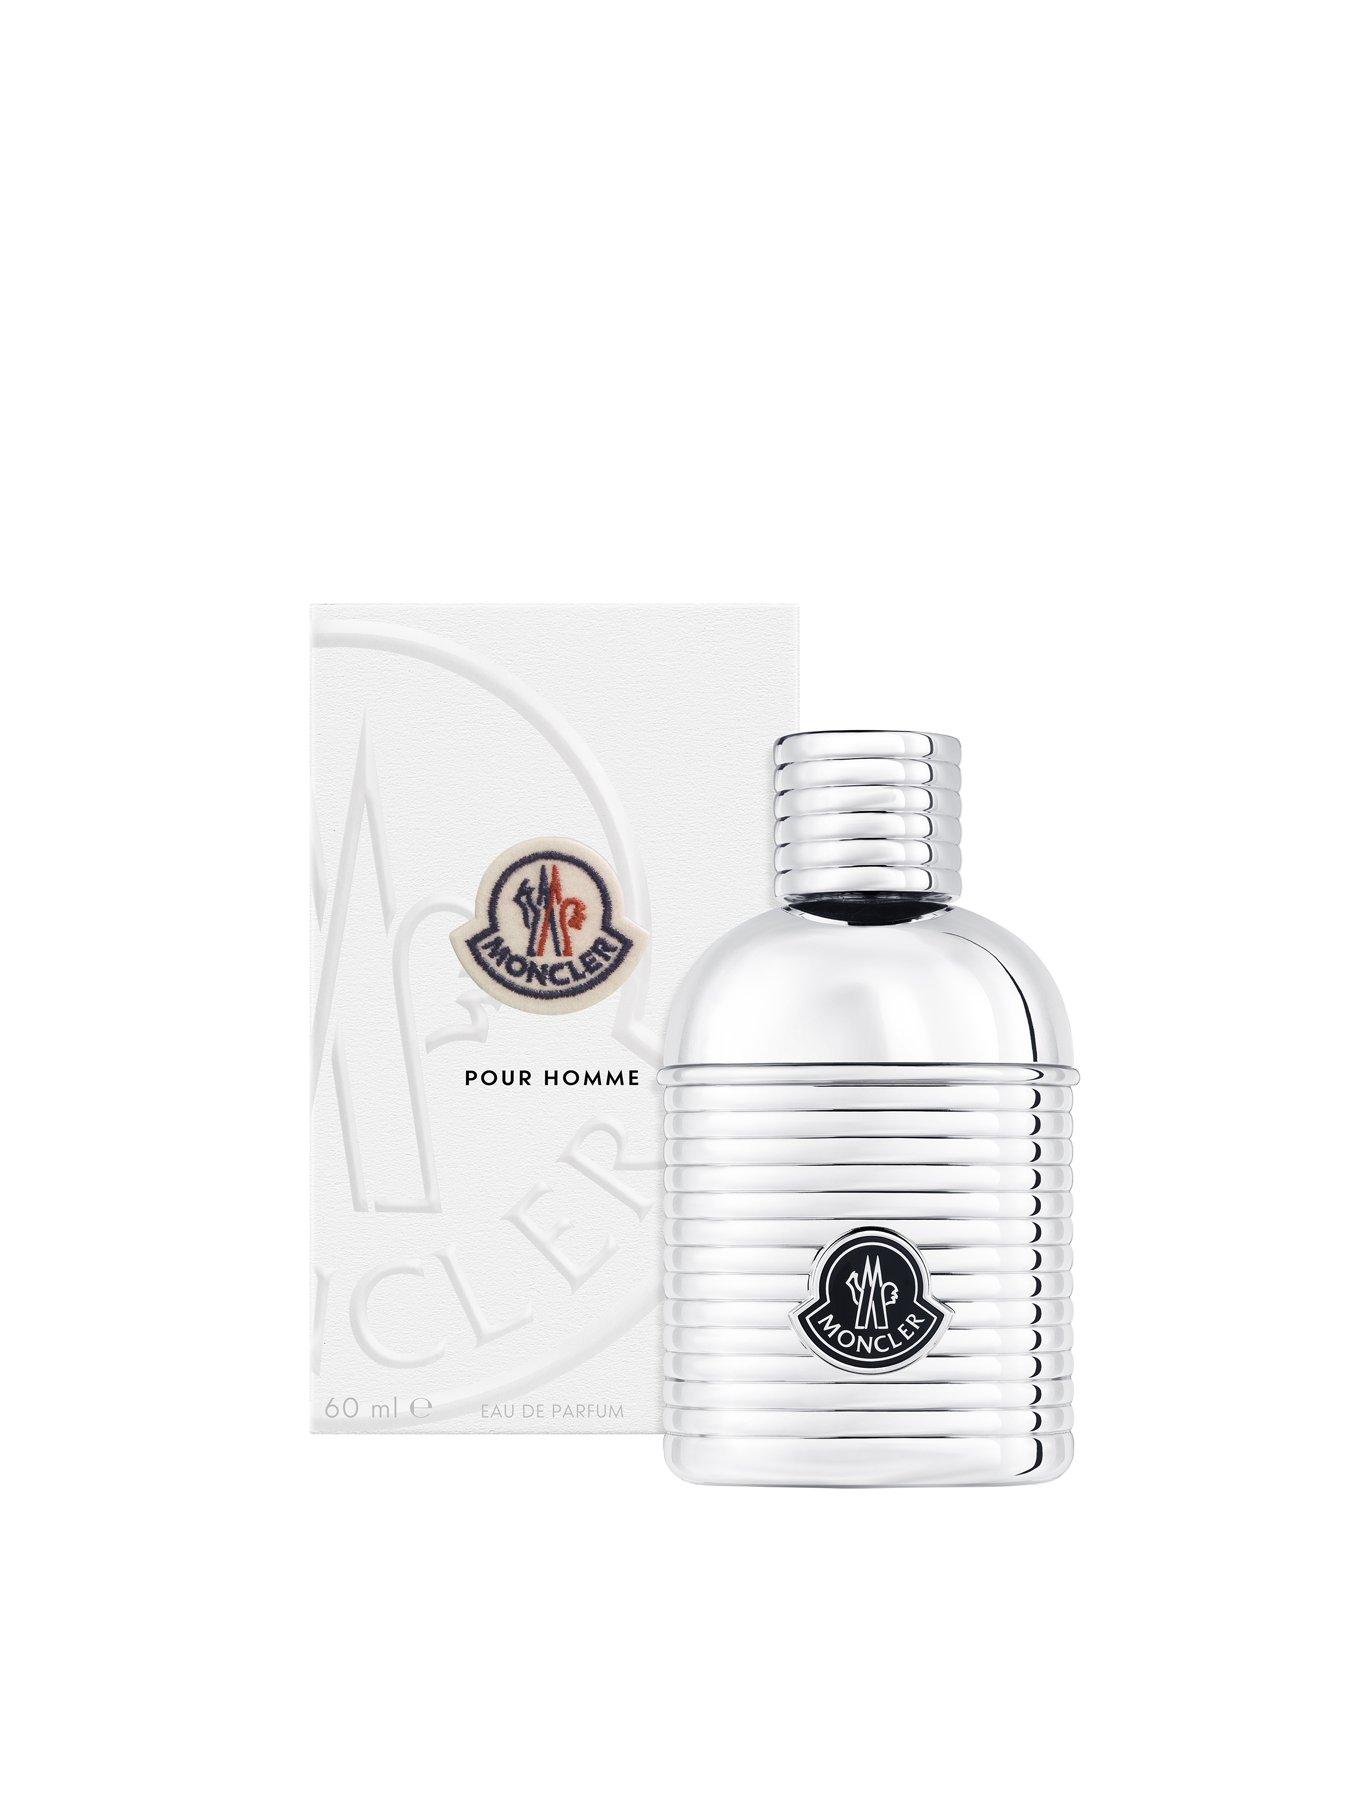 Moncler Pour Homme 60ml Eau de Parfum | Very.co.uk